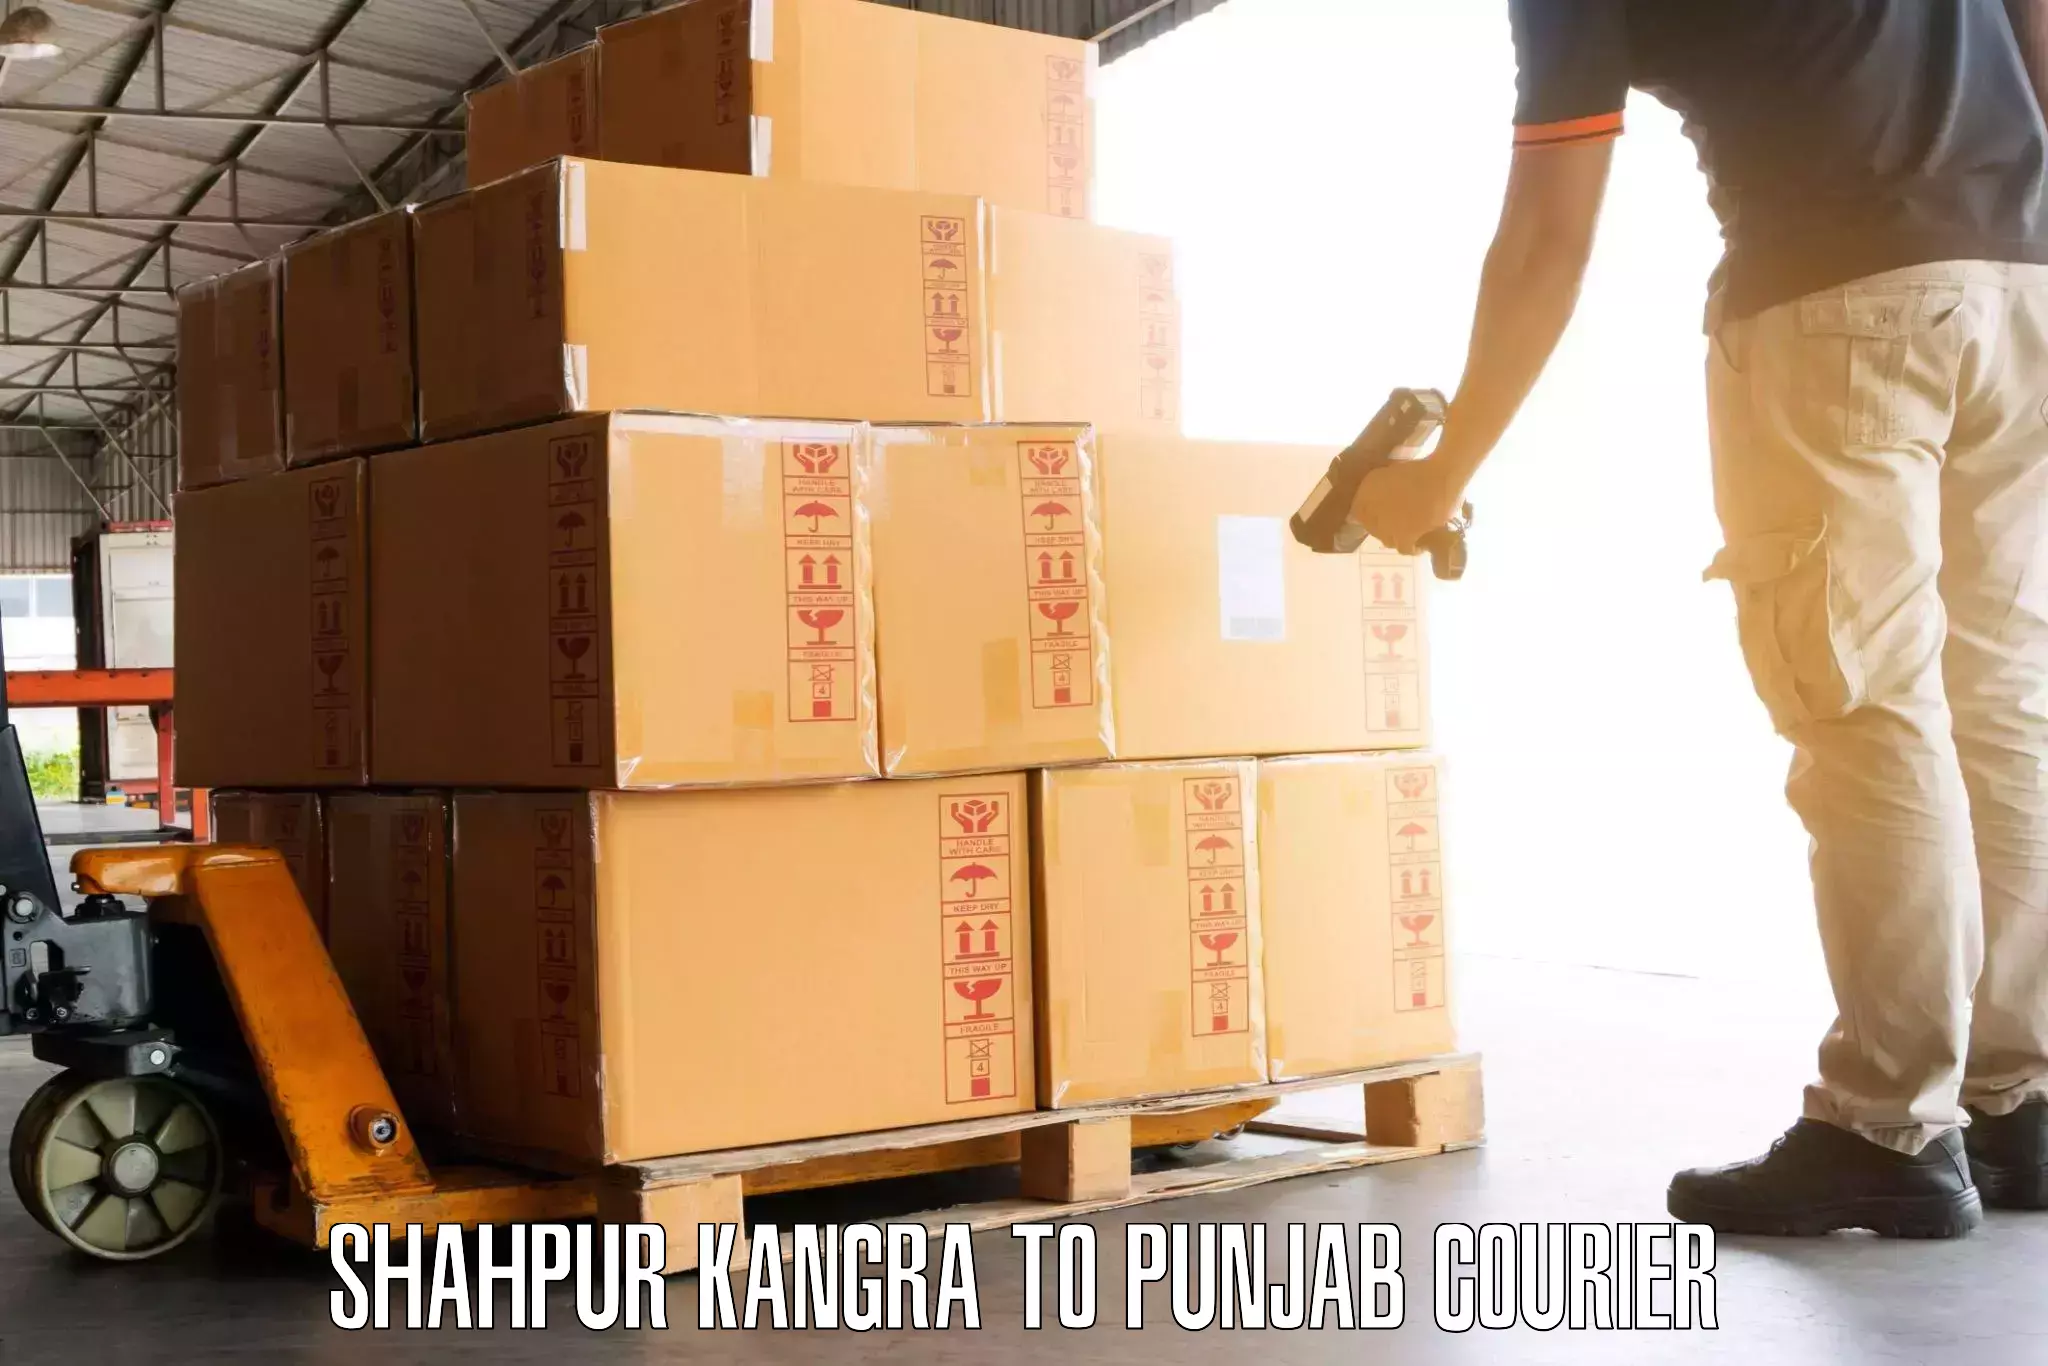 Luggage shipping rates Shahpur Kangra to Central University of Punjab Bathinda